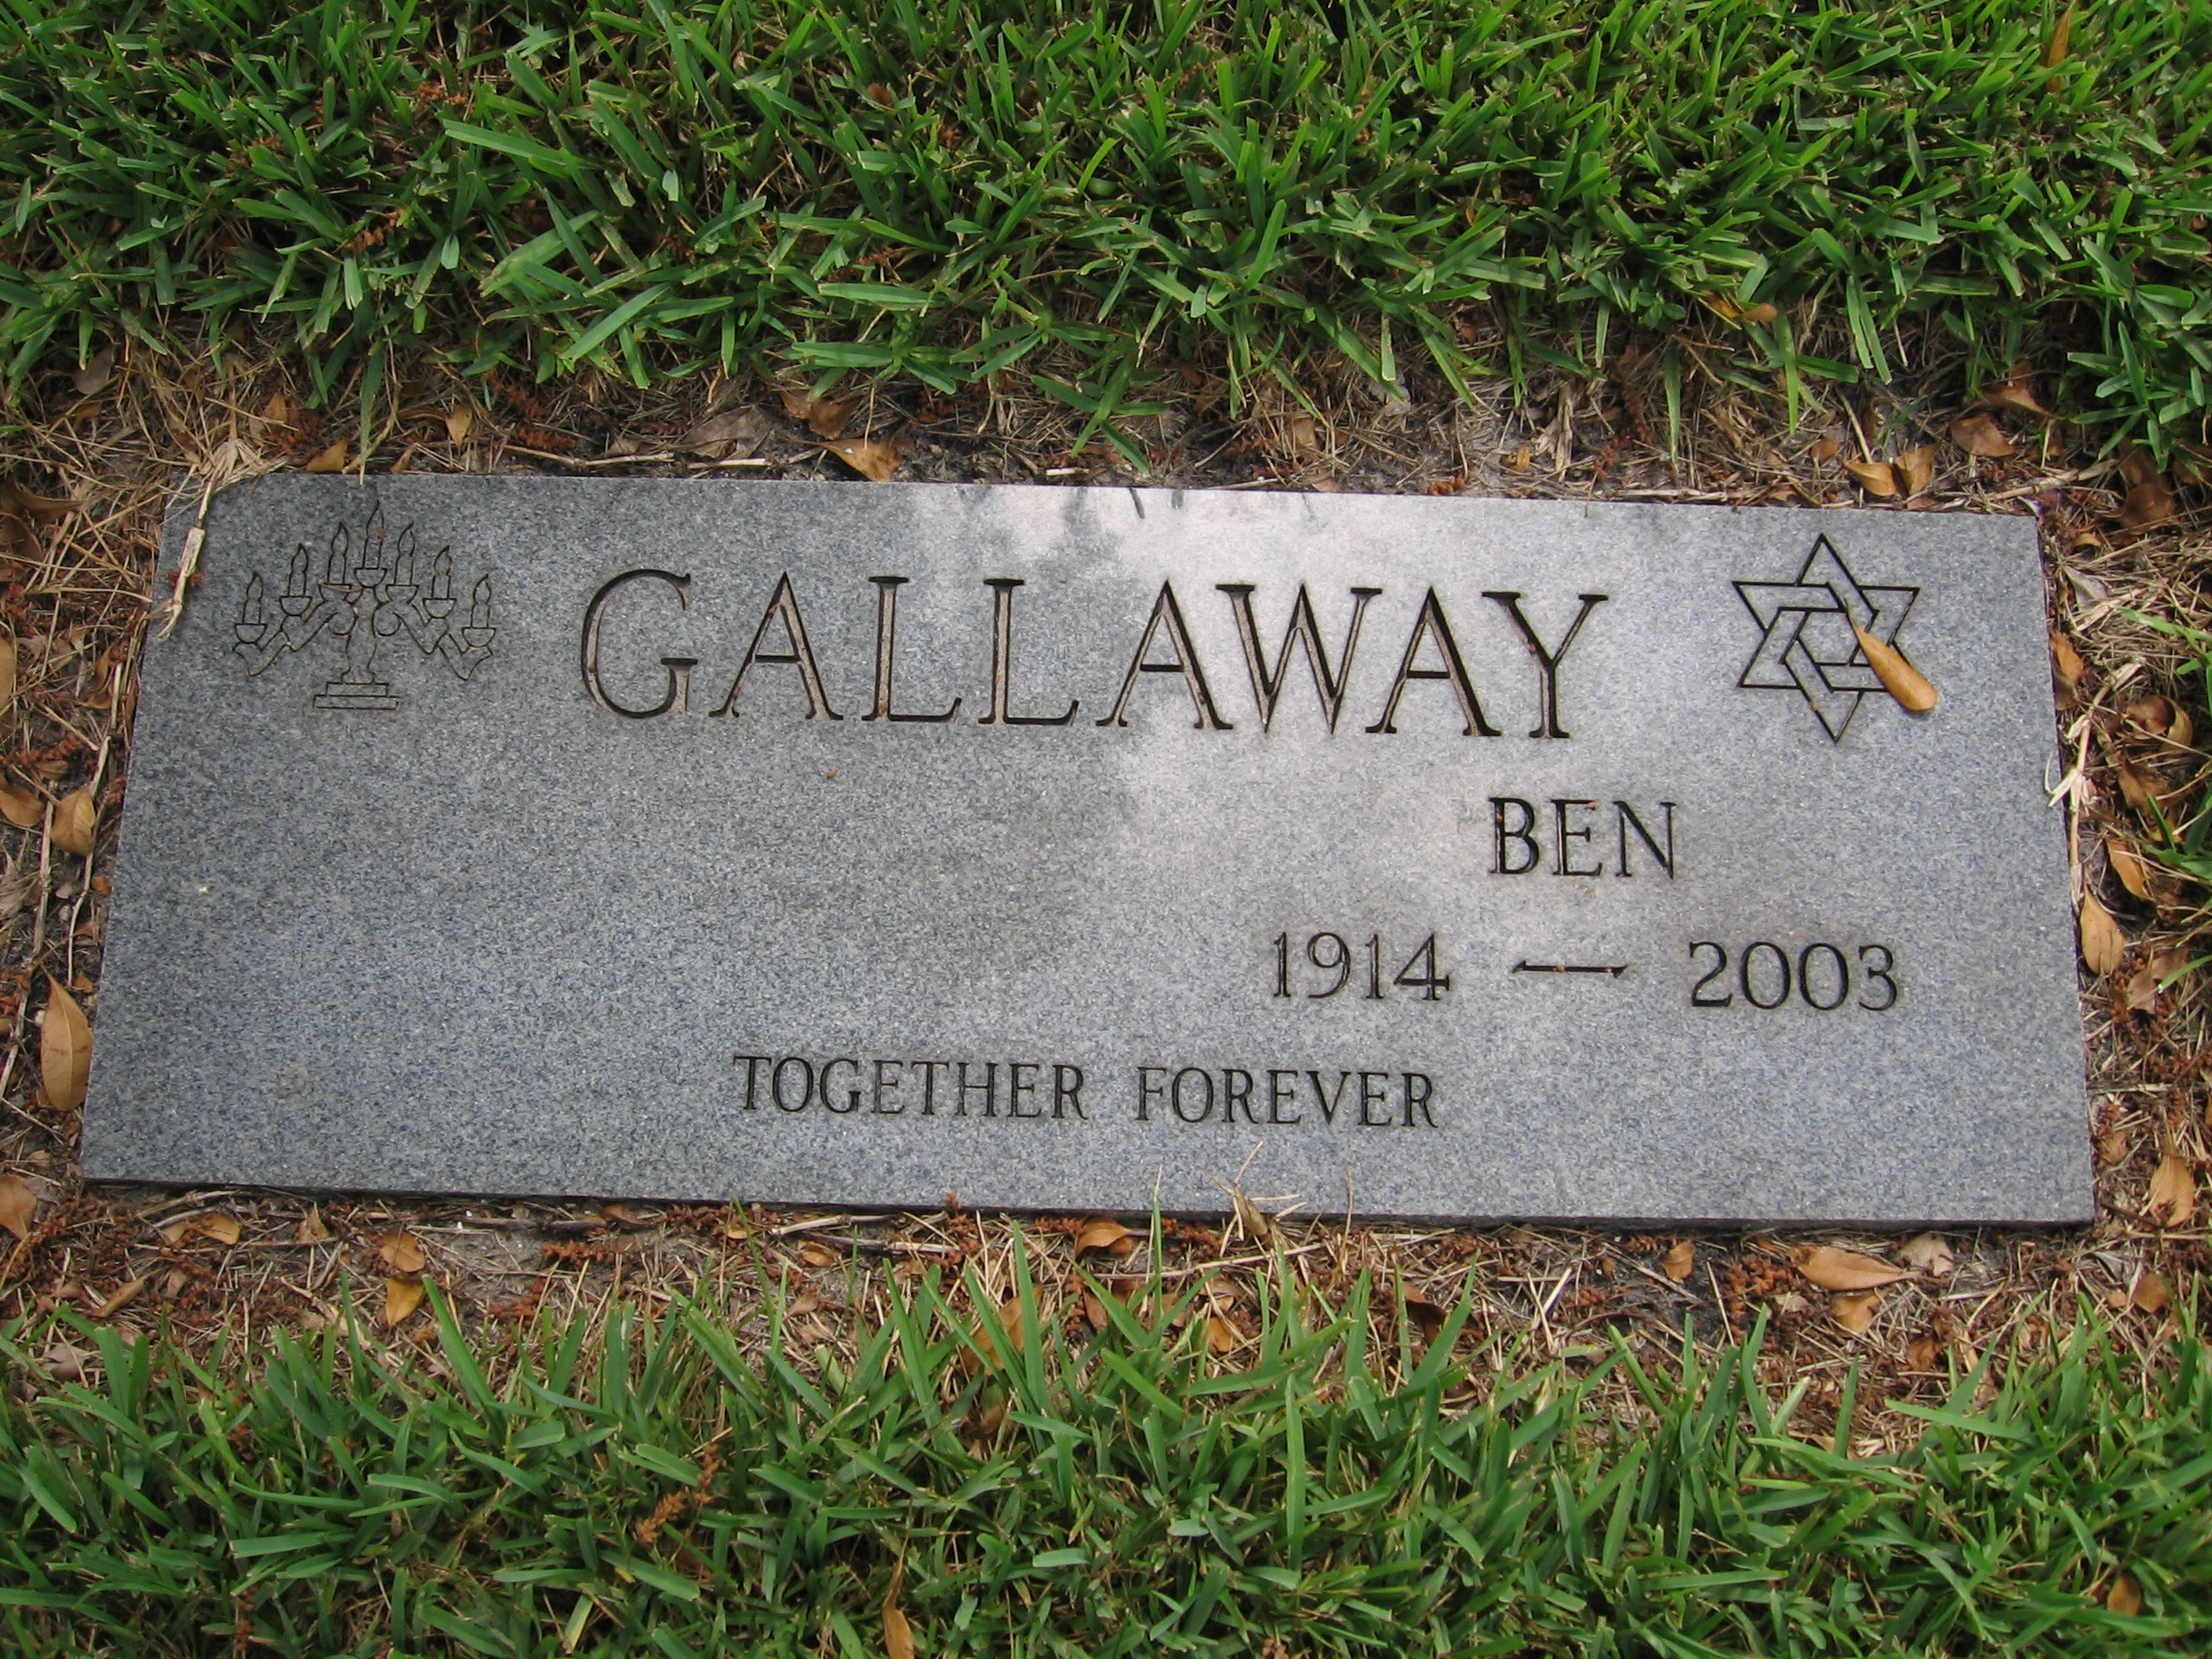 Ben Gallaway